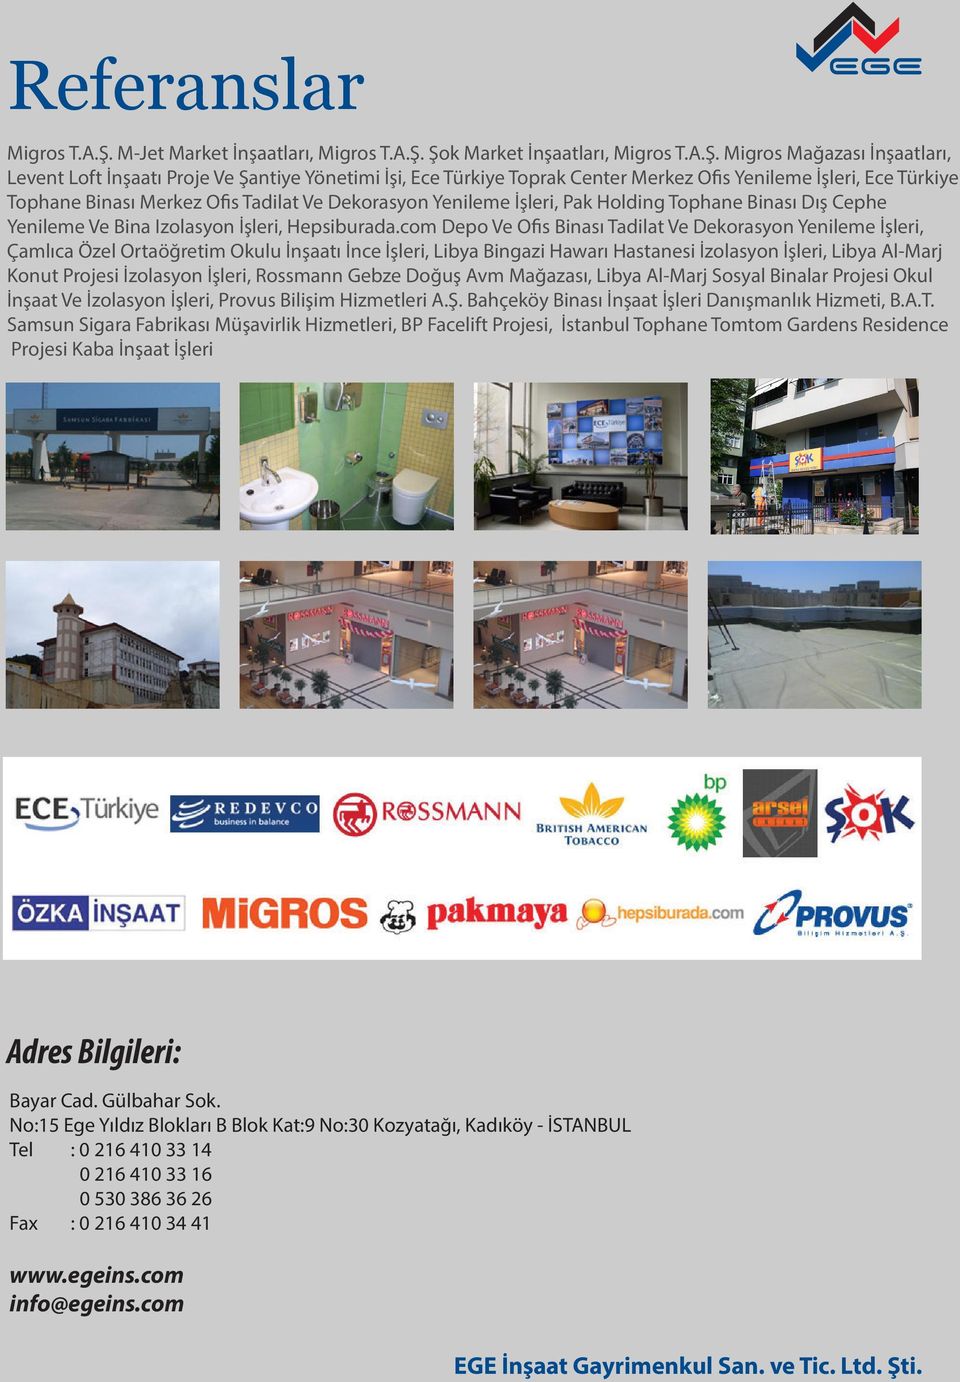 Şok Market İnşaatları, Migros T.A.Ş. Migros Mağazası İnşaatları, Levent Loft İnşaatı Proje Ve Şantiye Yönetimi İşi, Ece Türkiye Toprak Center Merkez Ofis Yenileme İşleri, Ece Türkiye Tophane Binası